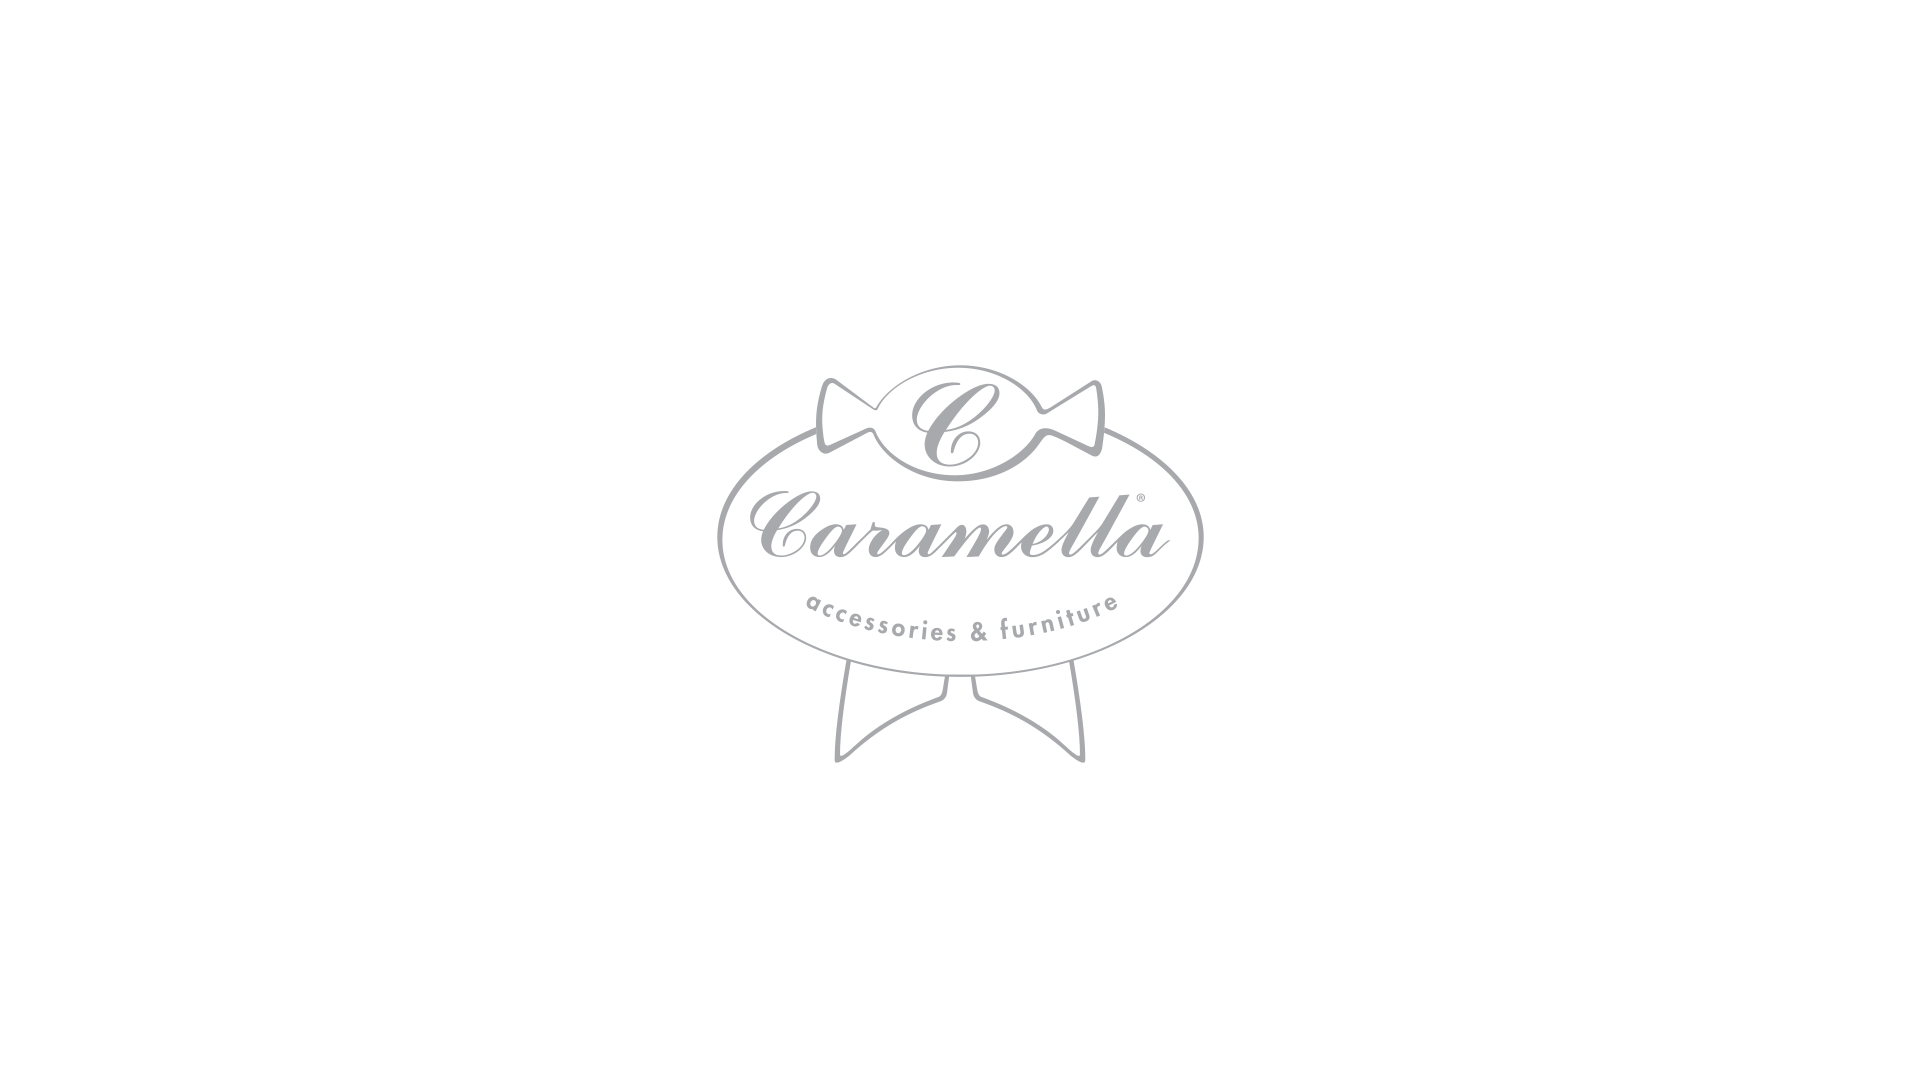 Naszą współpracę rozpoczęliśmy od refreshingu logotypu Caramella.